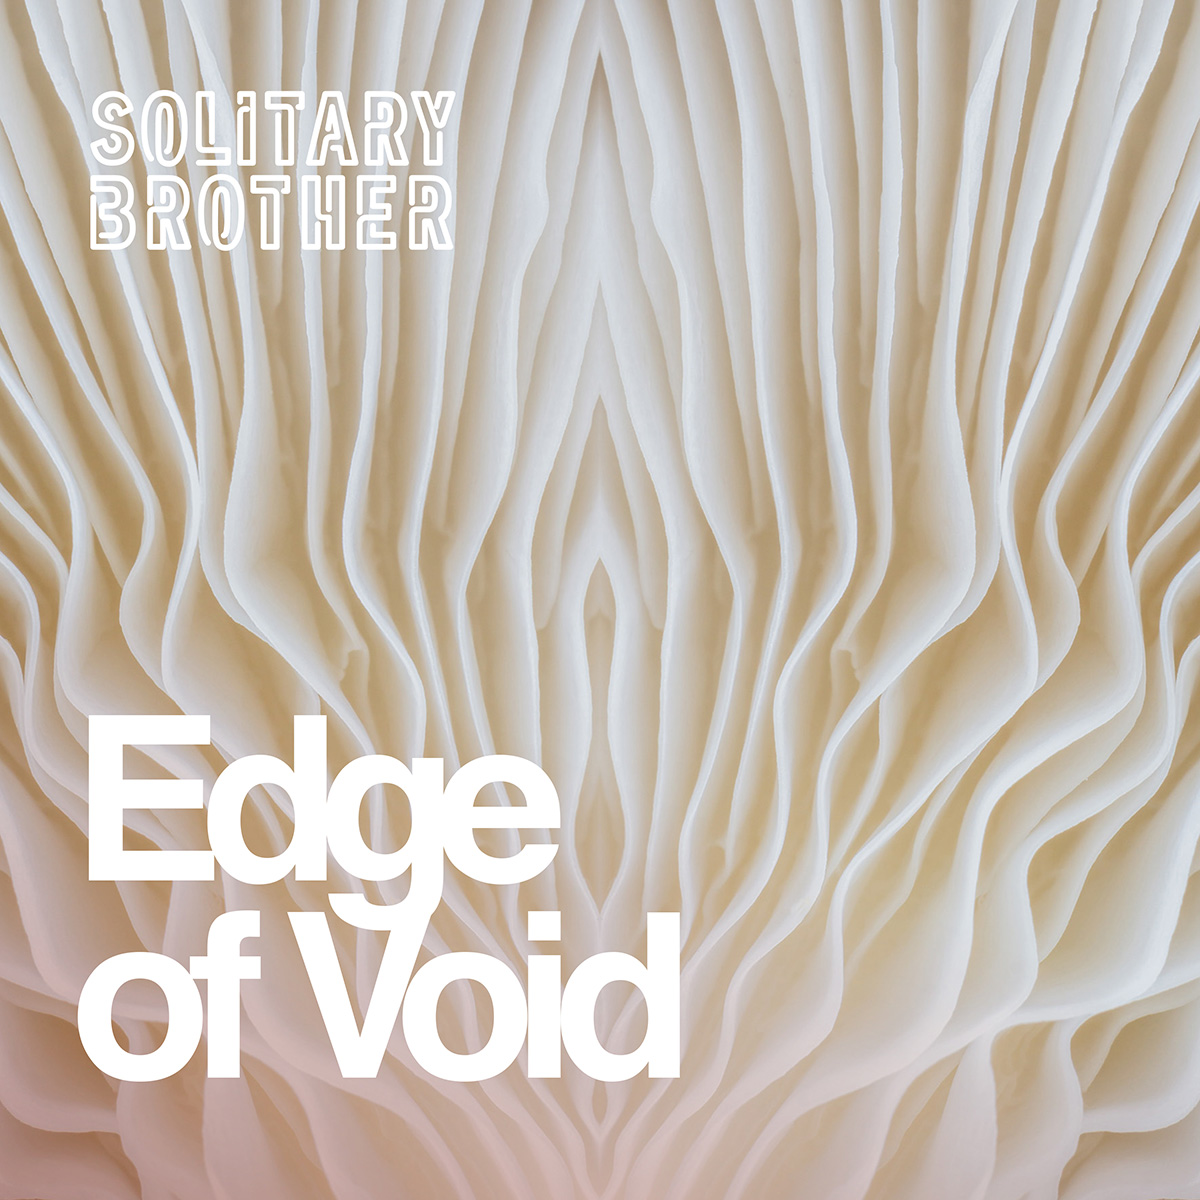 Edge of Void